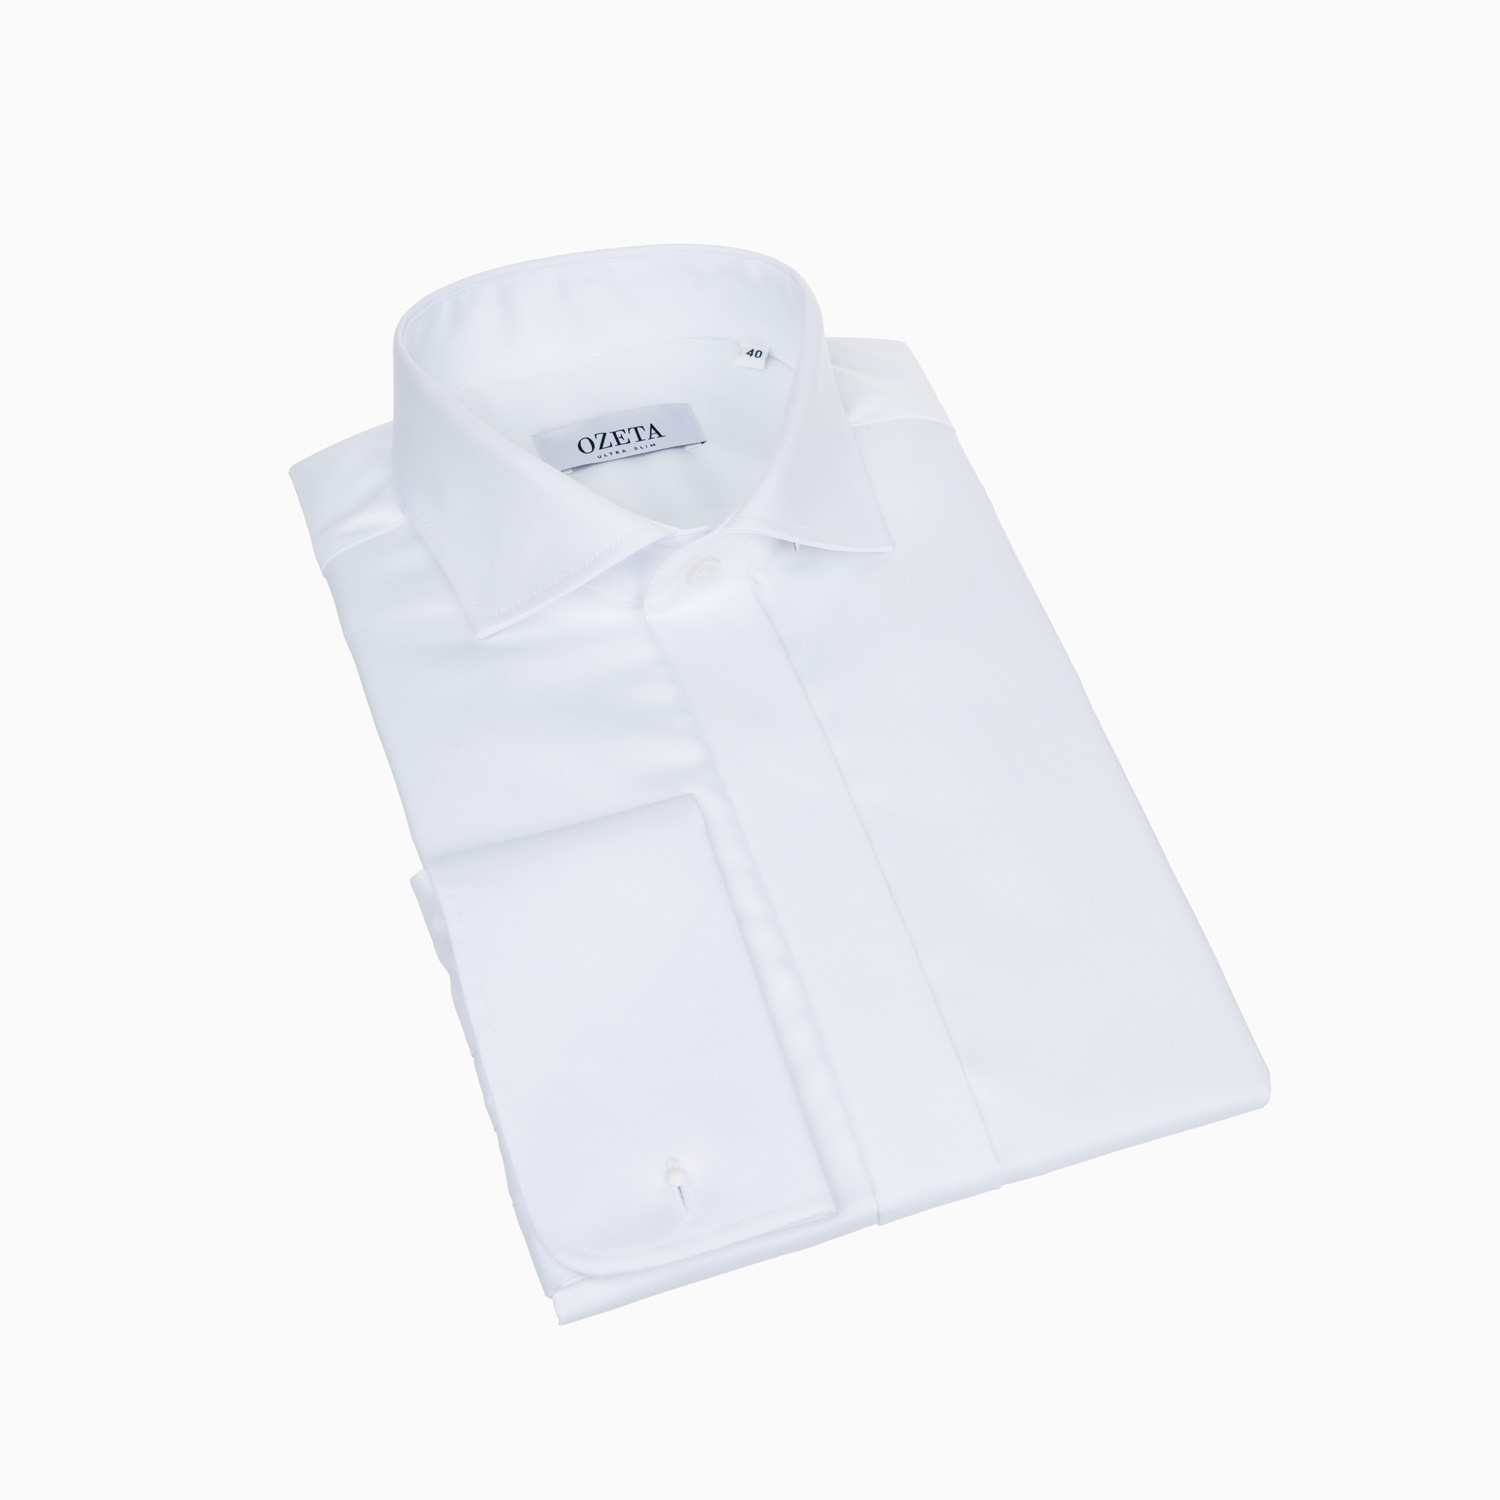 Manschettenhemd Weiß - verdeckte Knopfleiste - Slim Fit